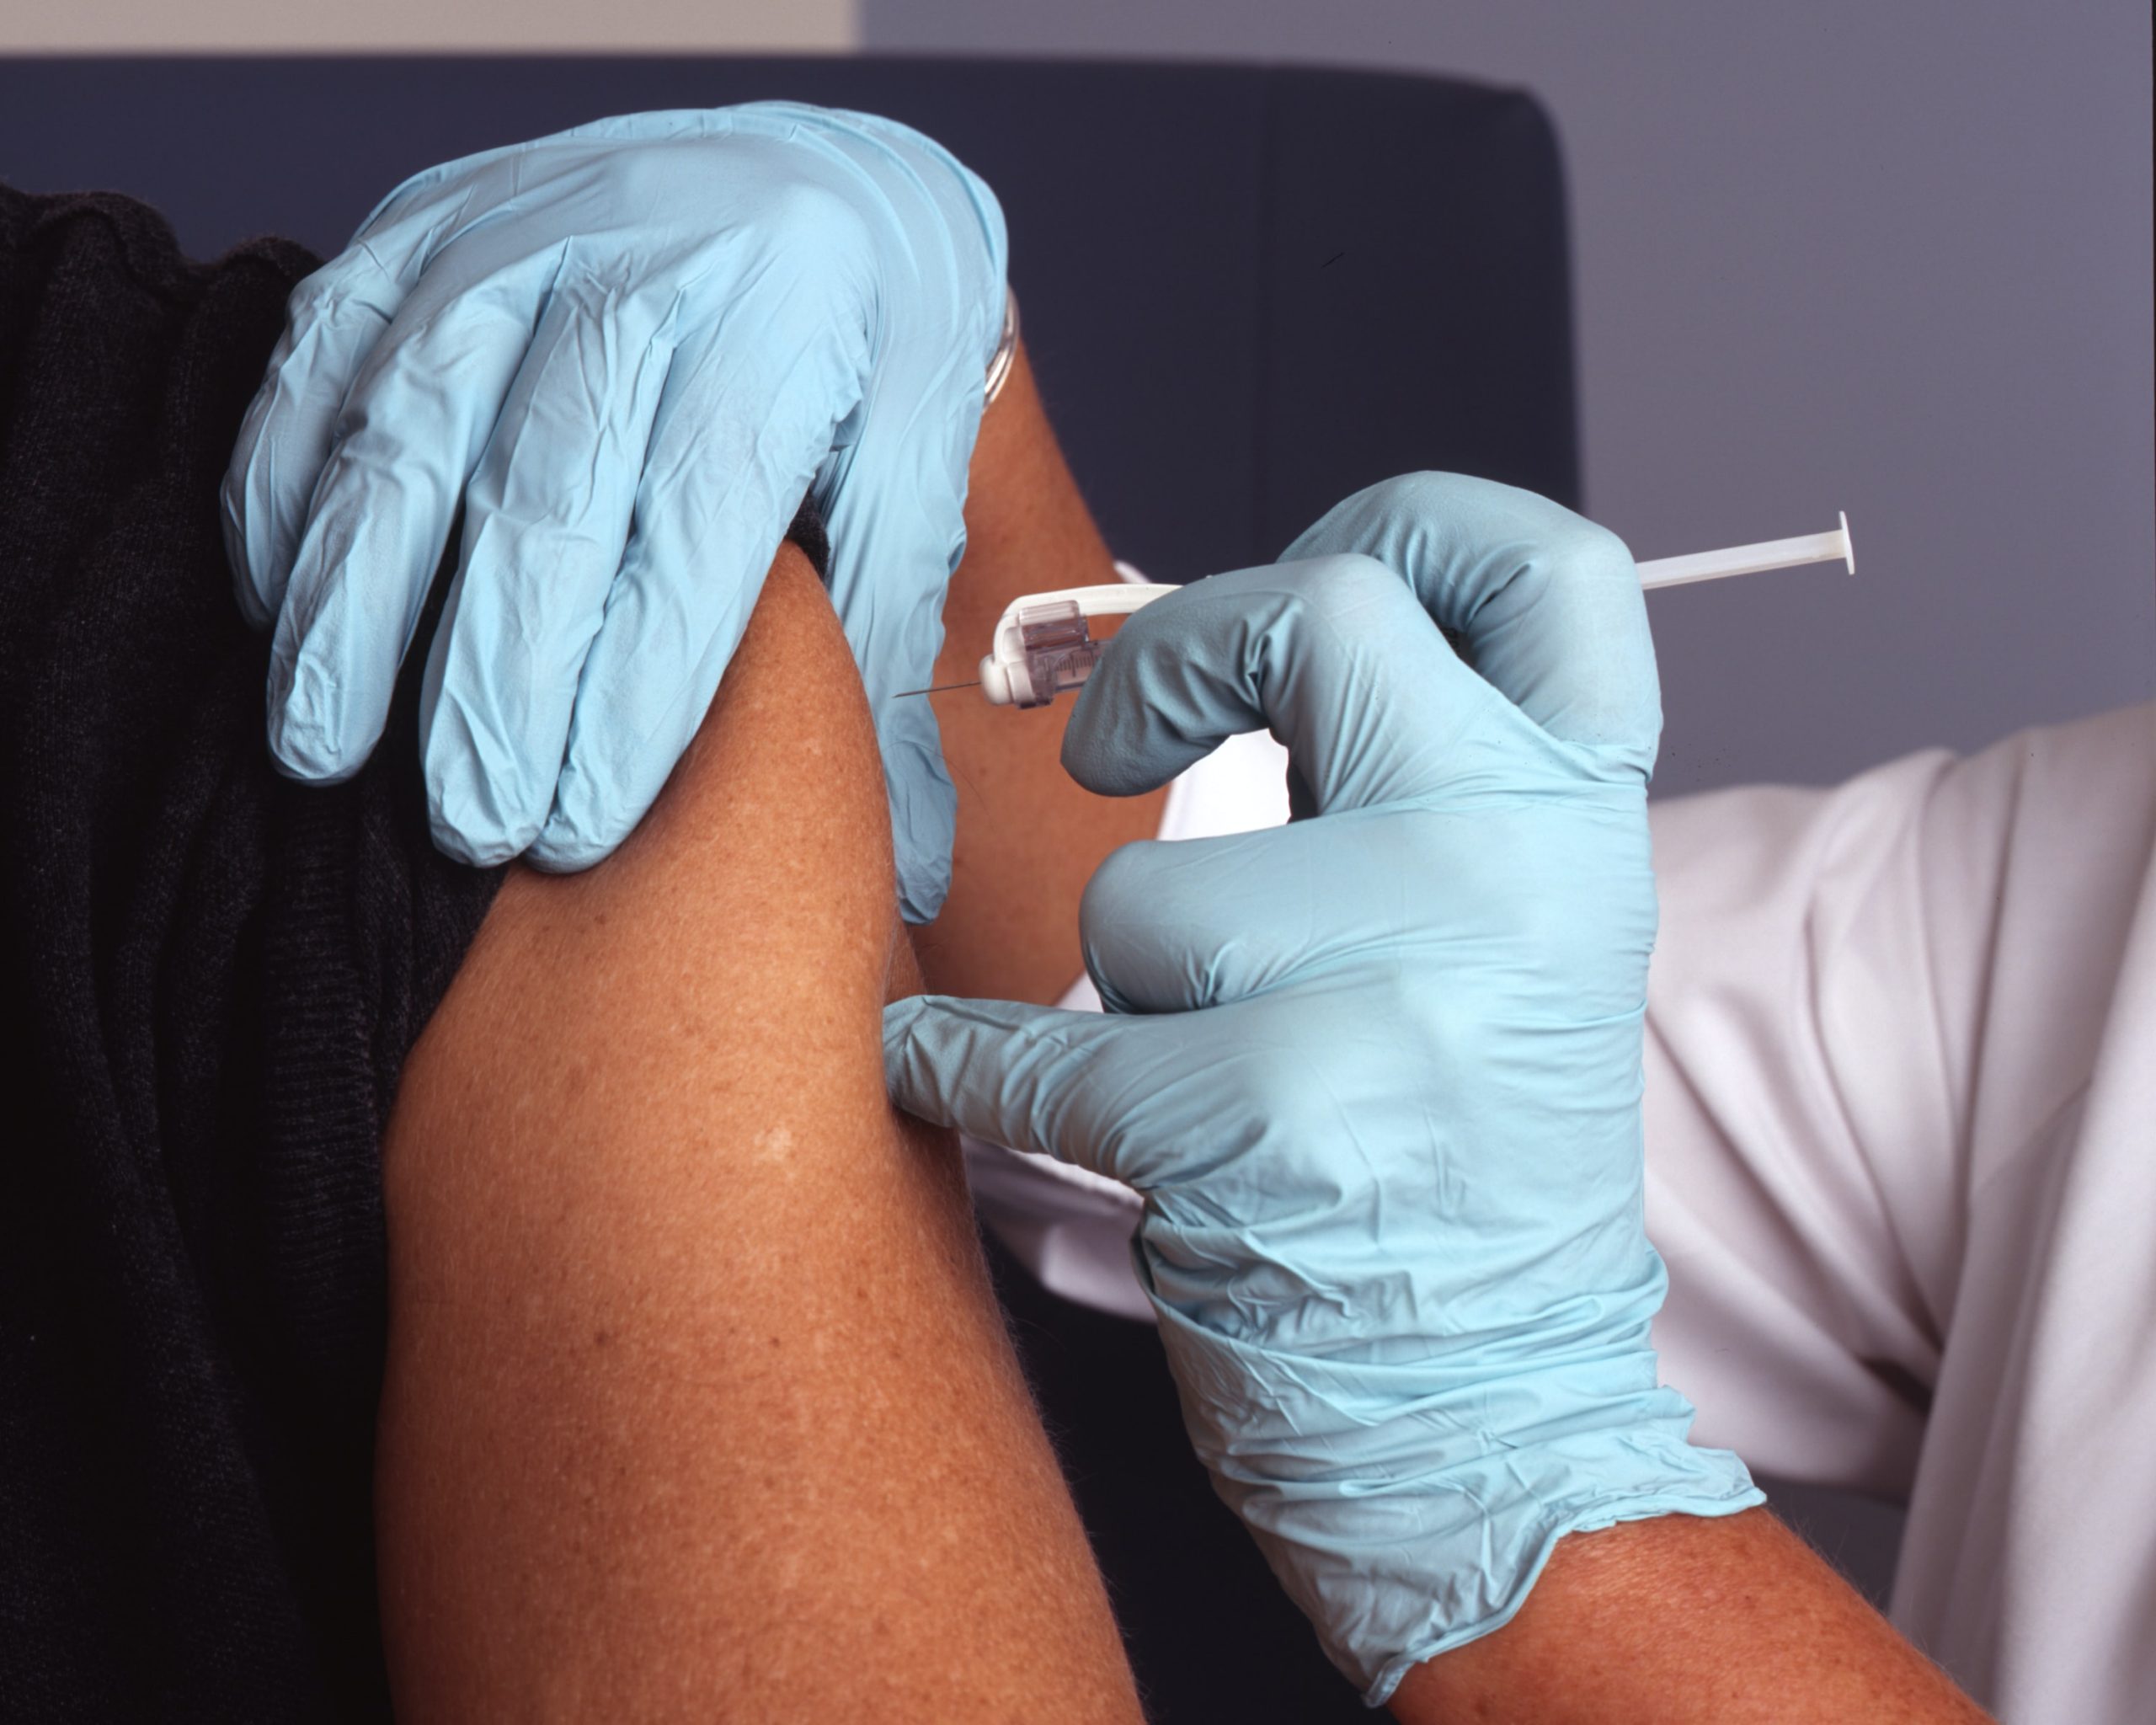 Gobierno está implantando microchips con la vacuna, afirman uno de cada cinco estadounidenses